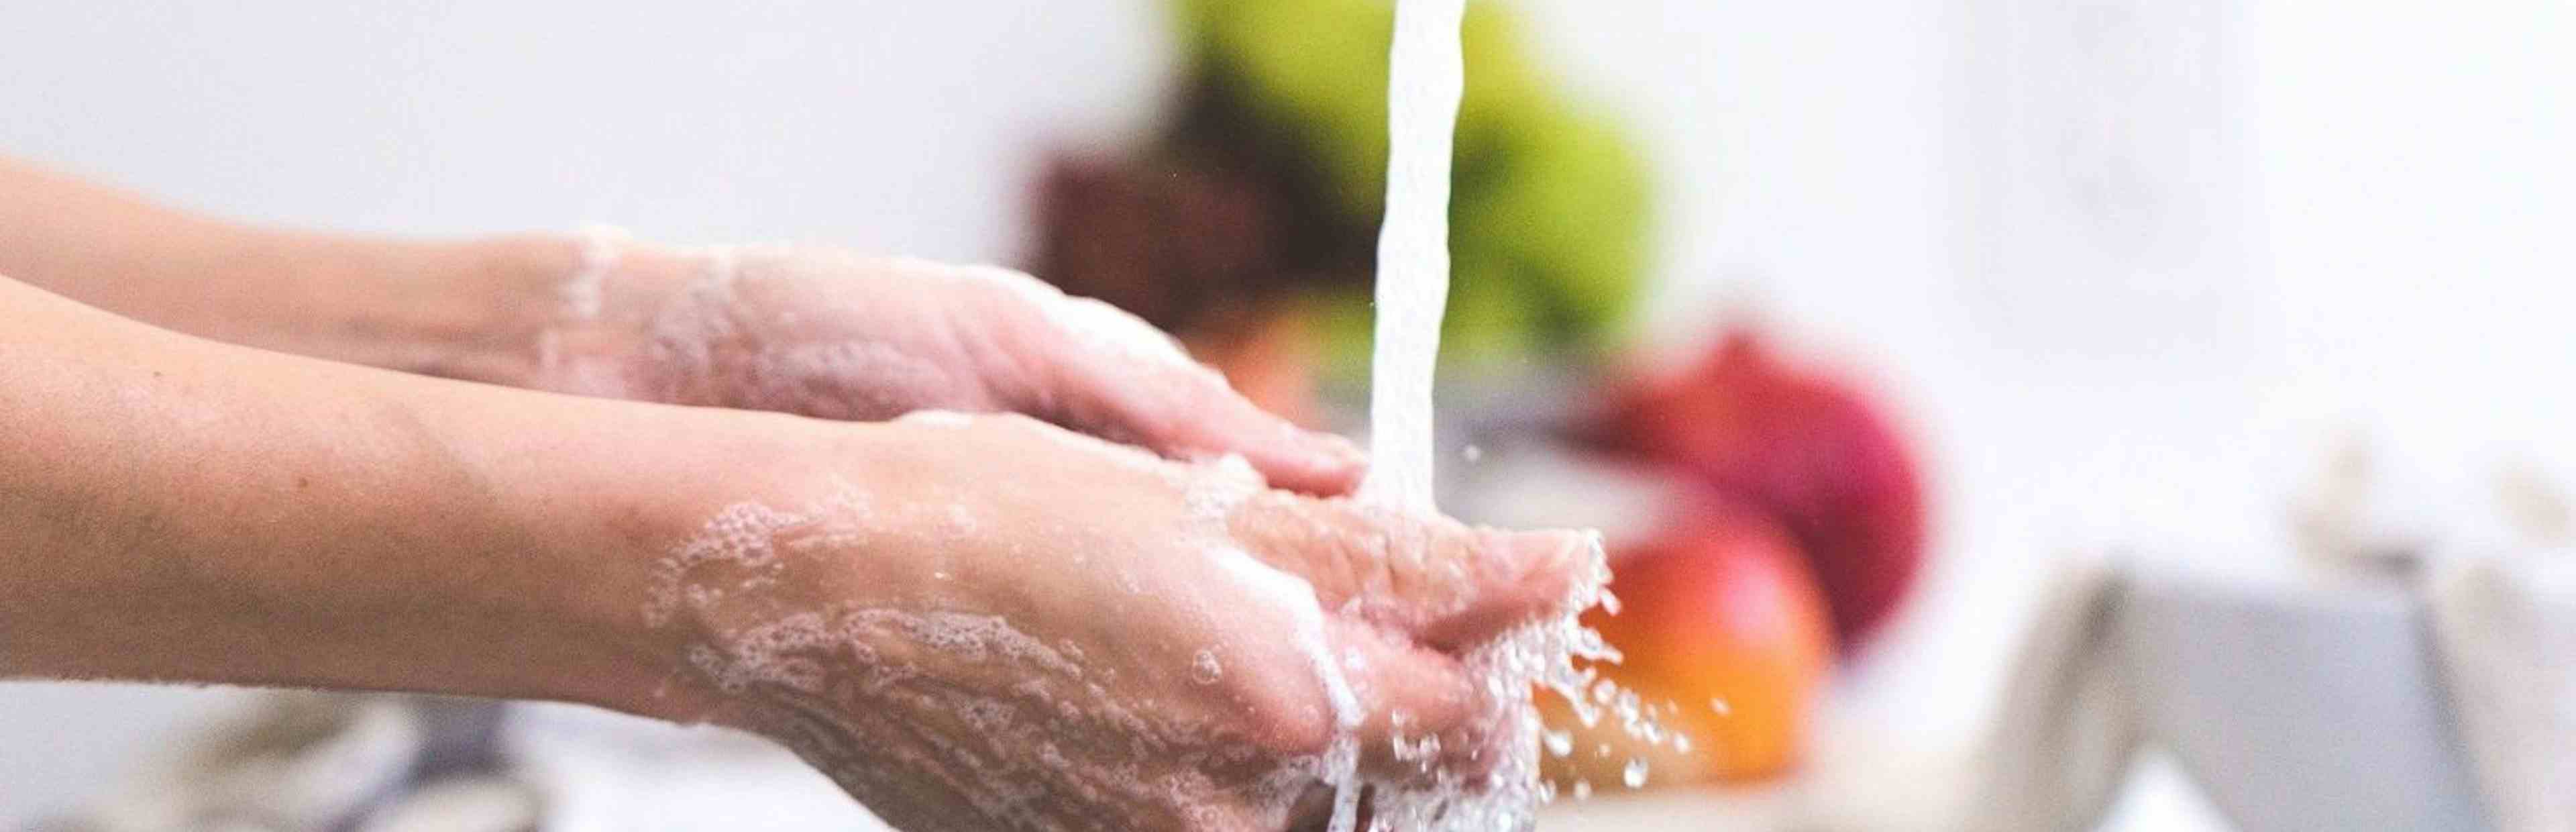 Washing hands under running water